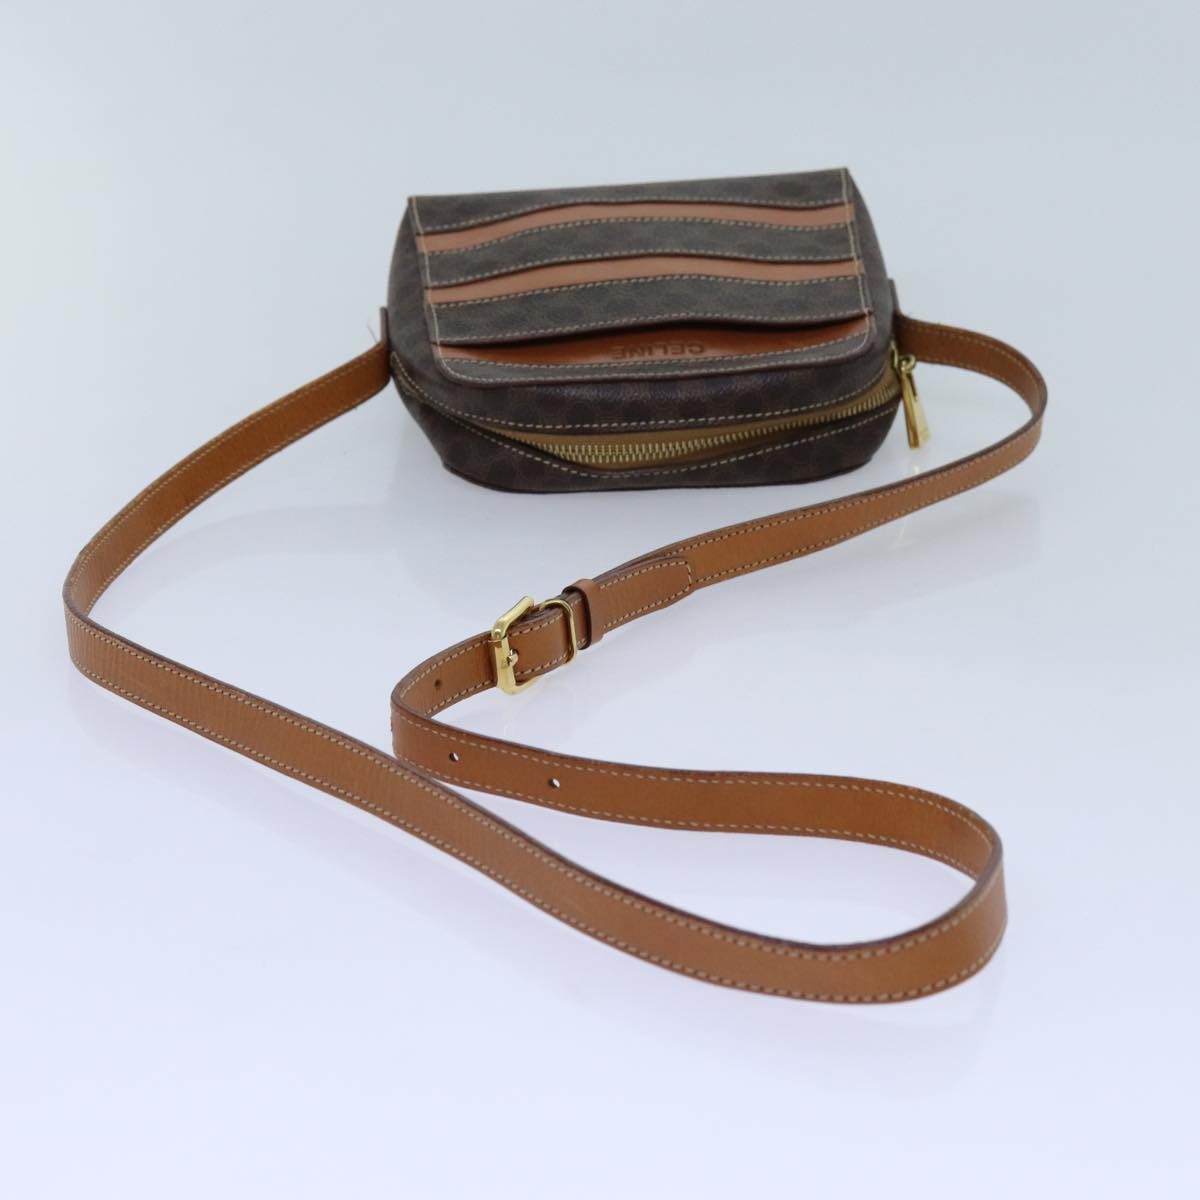 CELINE Macadam Canvas Shoulder Bag PVC Brown Auth 71879